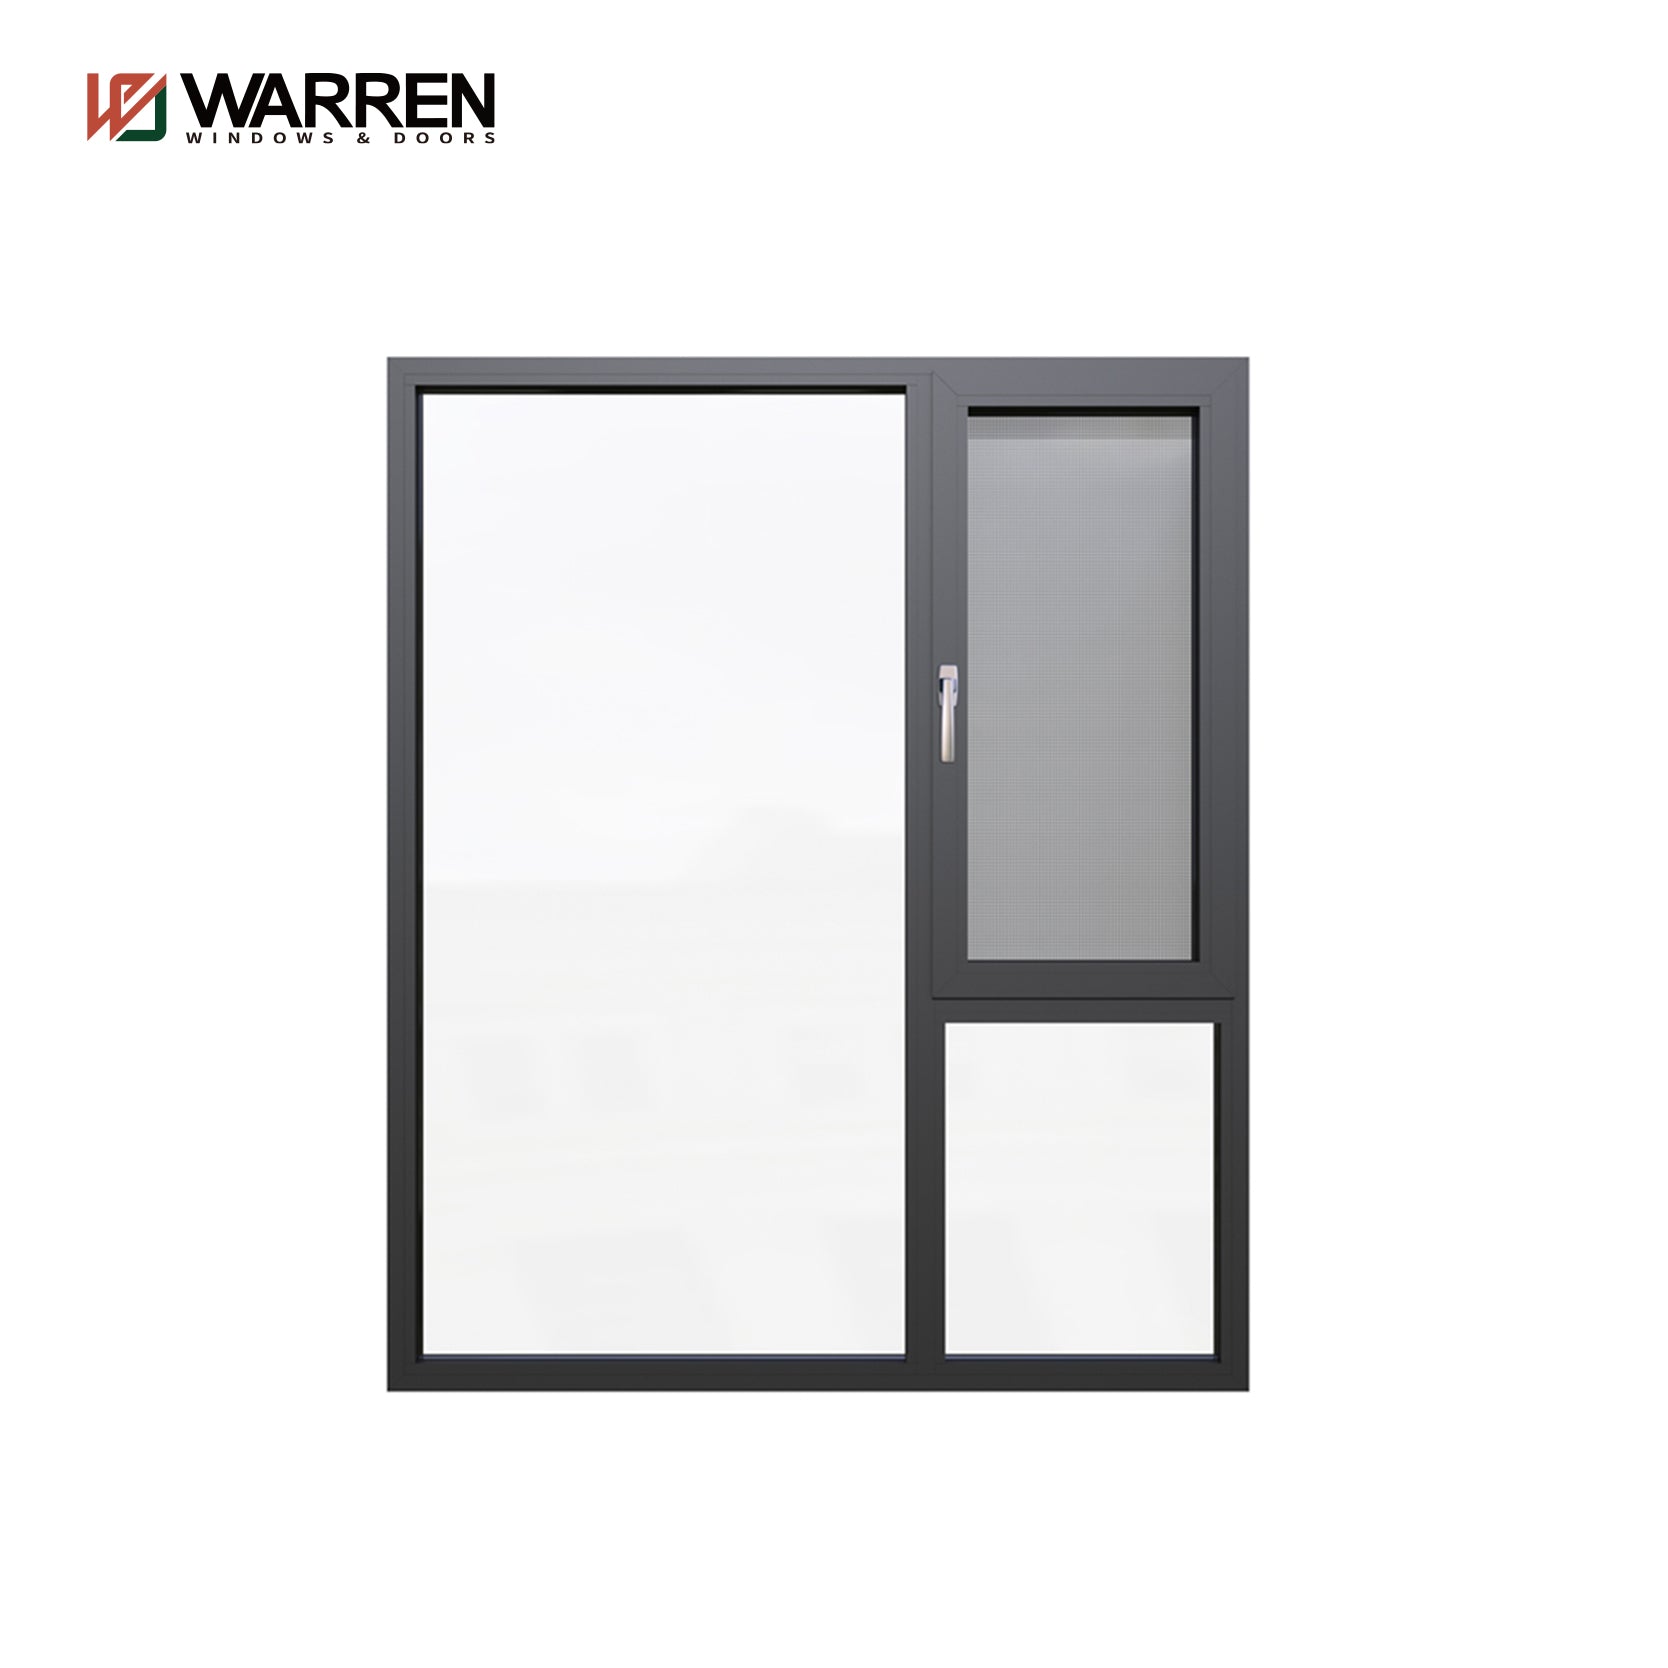 Warren New Design Good Quality Glass Casement Windows Out-Opening Window Casement Windows Parts